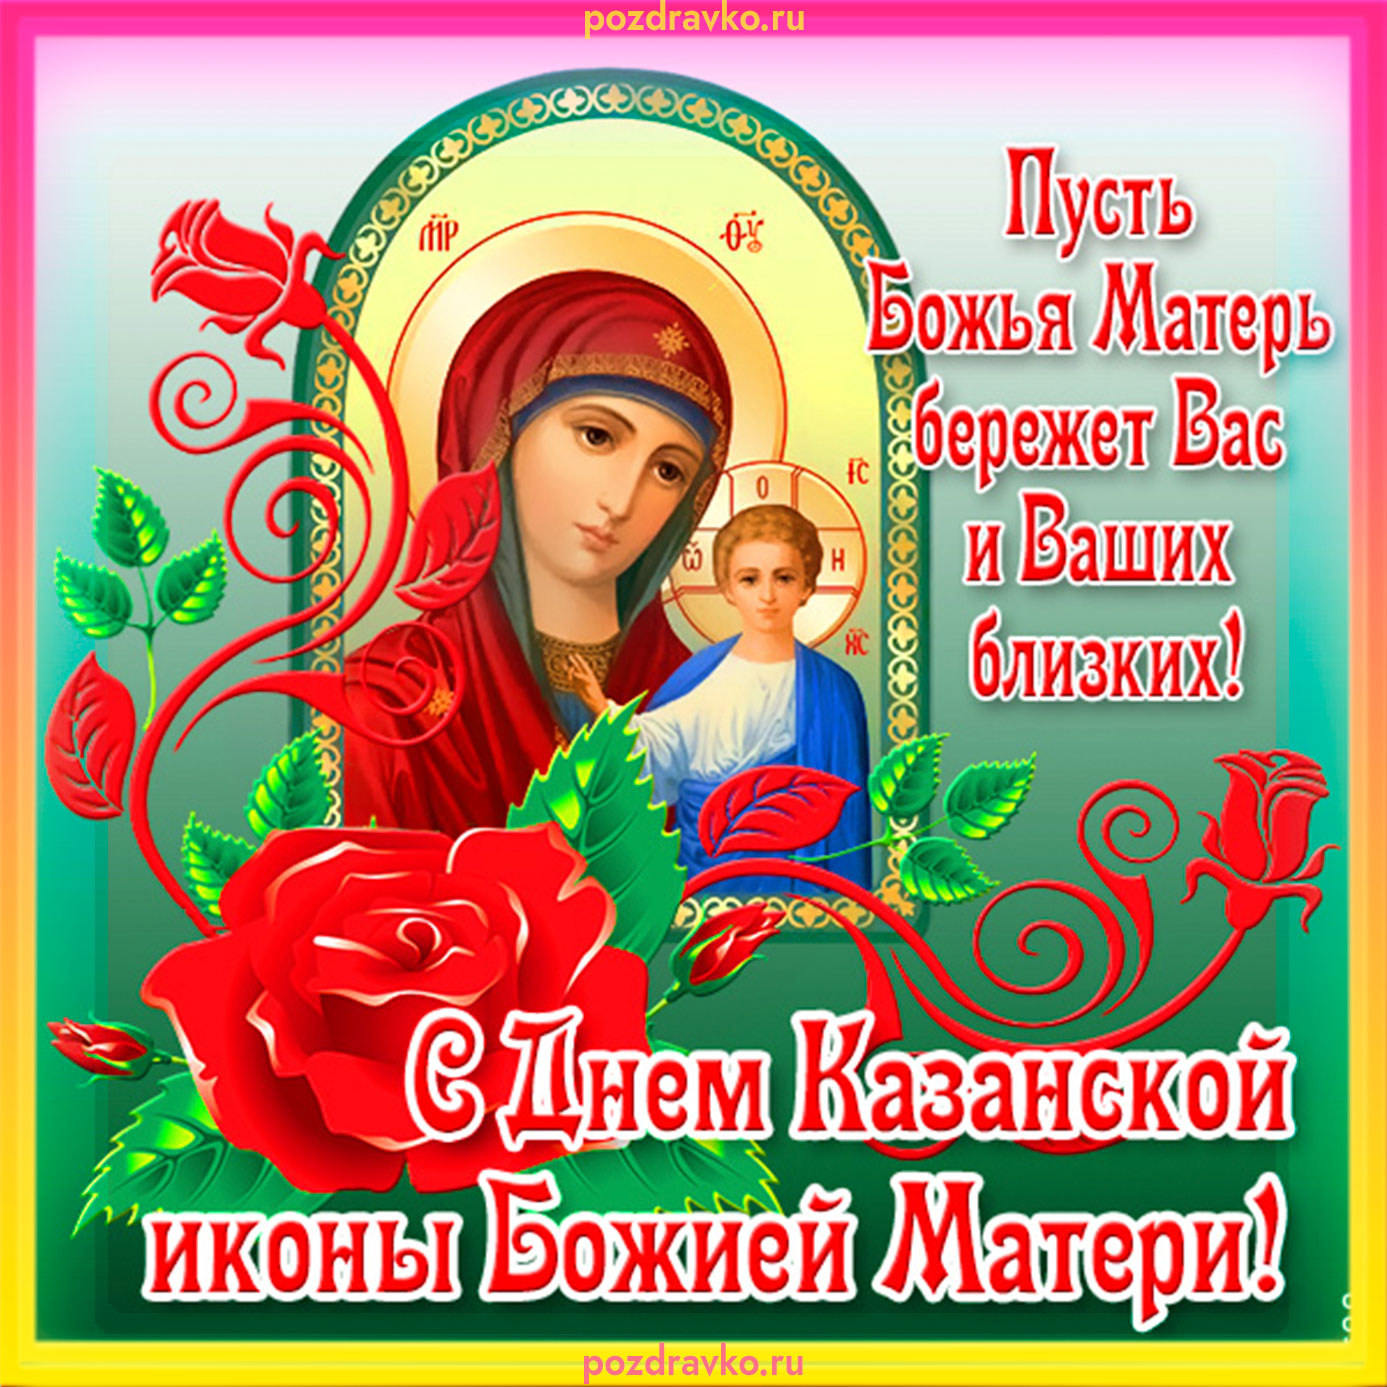 Картинки с Явлением Иконы Казанской Божьей Матери | ТОП Картинки